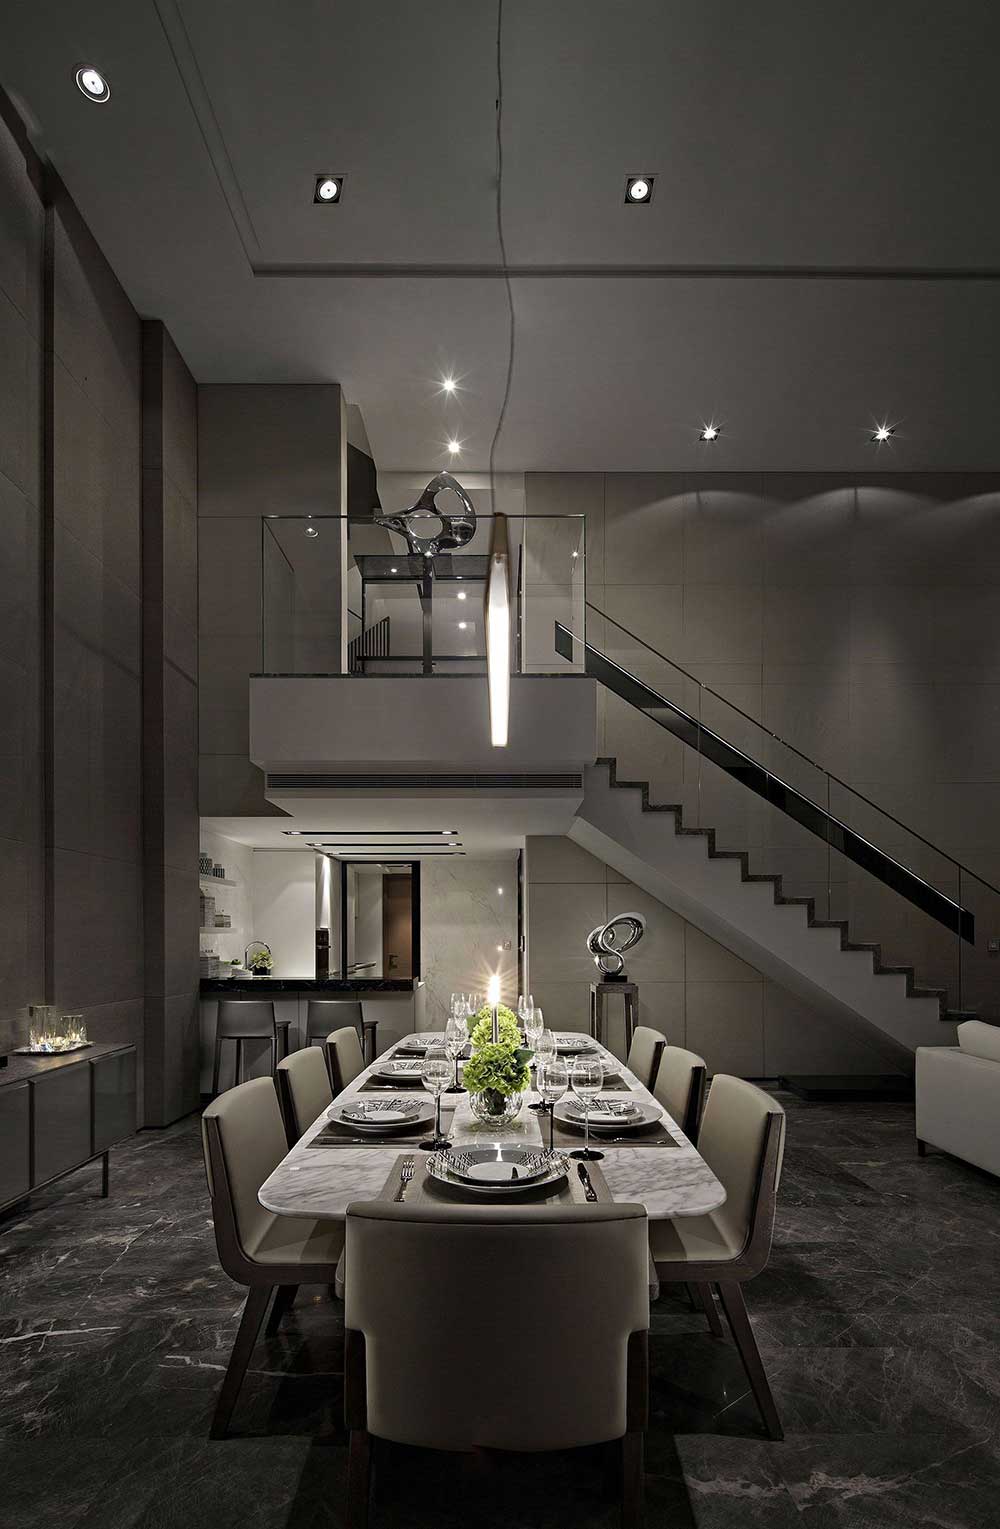 长条形餐桌与线条设计的吊灯相互呼应，淡淡的灯光打在餐桌上营造浪漫的气氛。